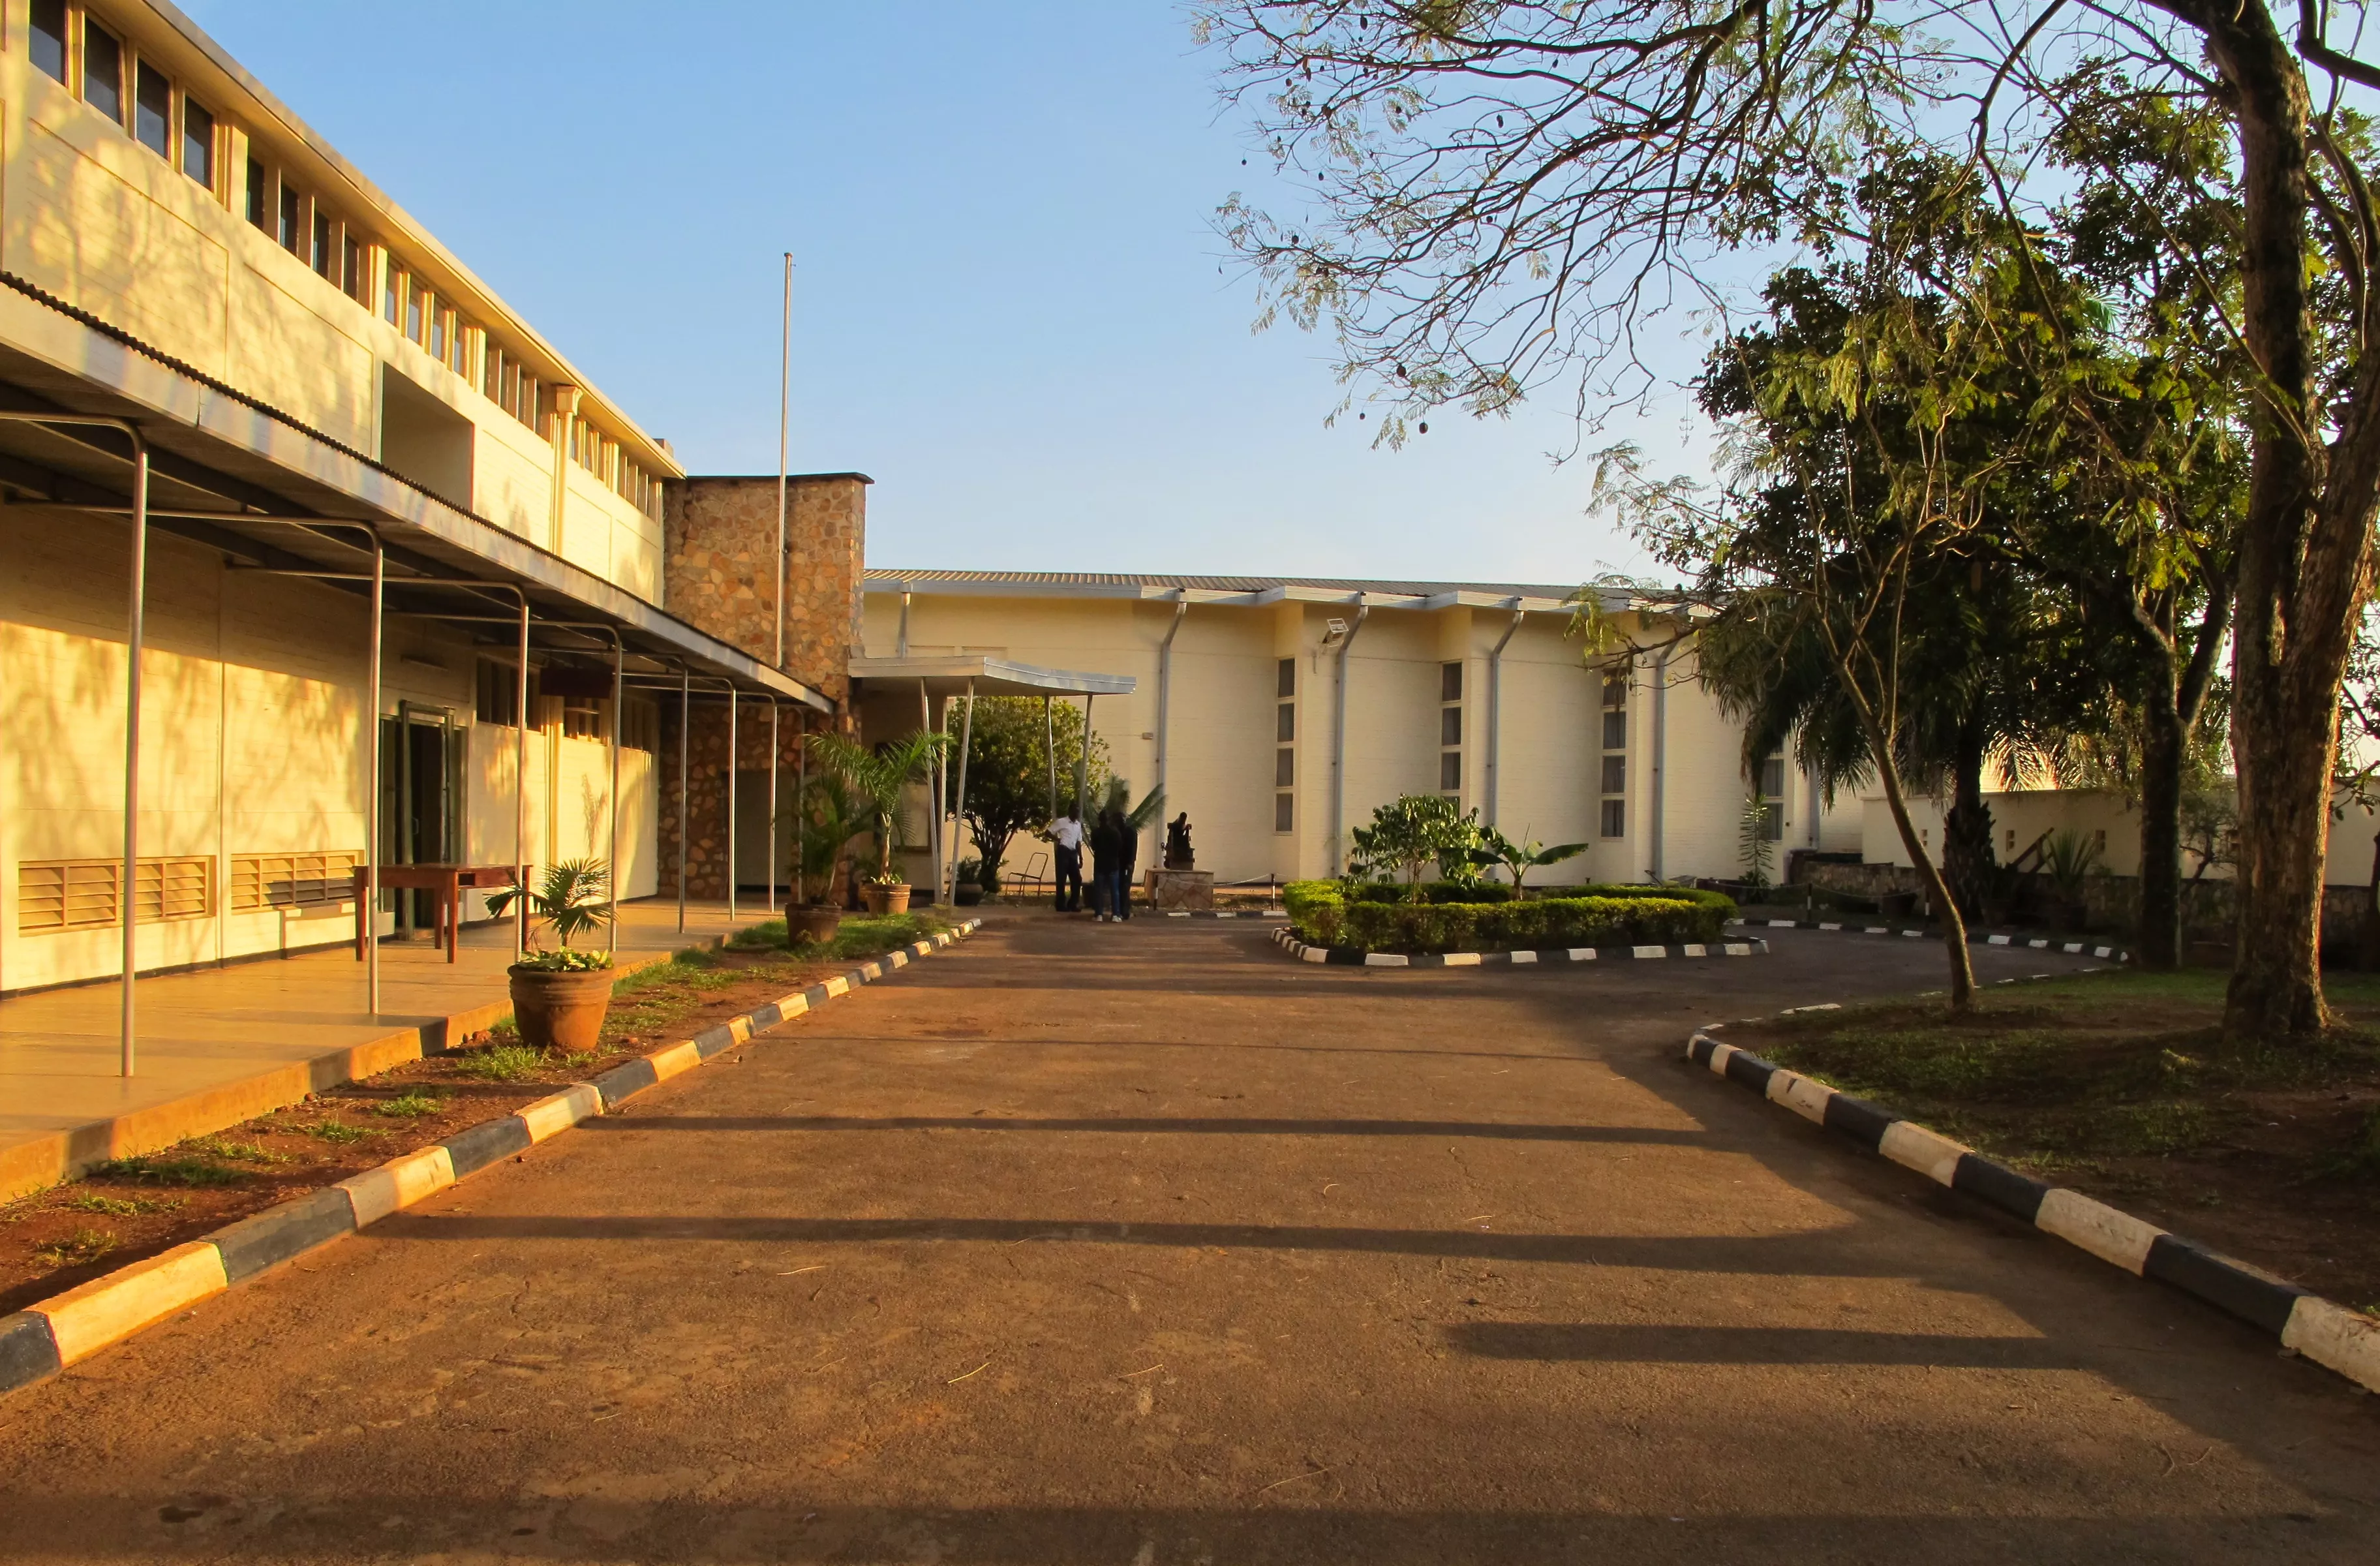 Uganda Museum in Uganda, Africa | Museums - Rated 3.3